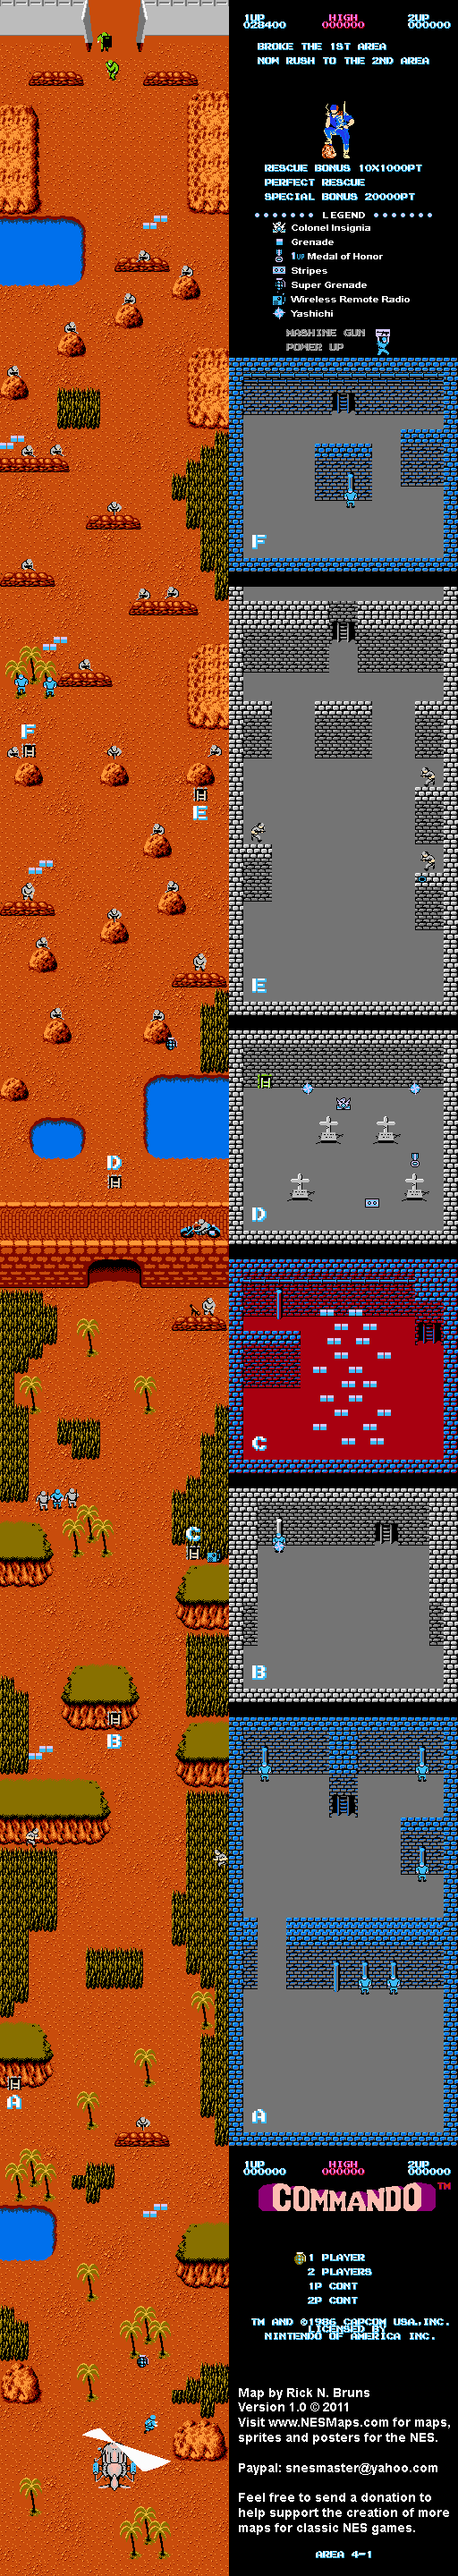 Commando - Area 4-1 - Nintendo NES Map